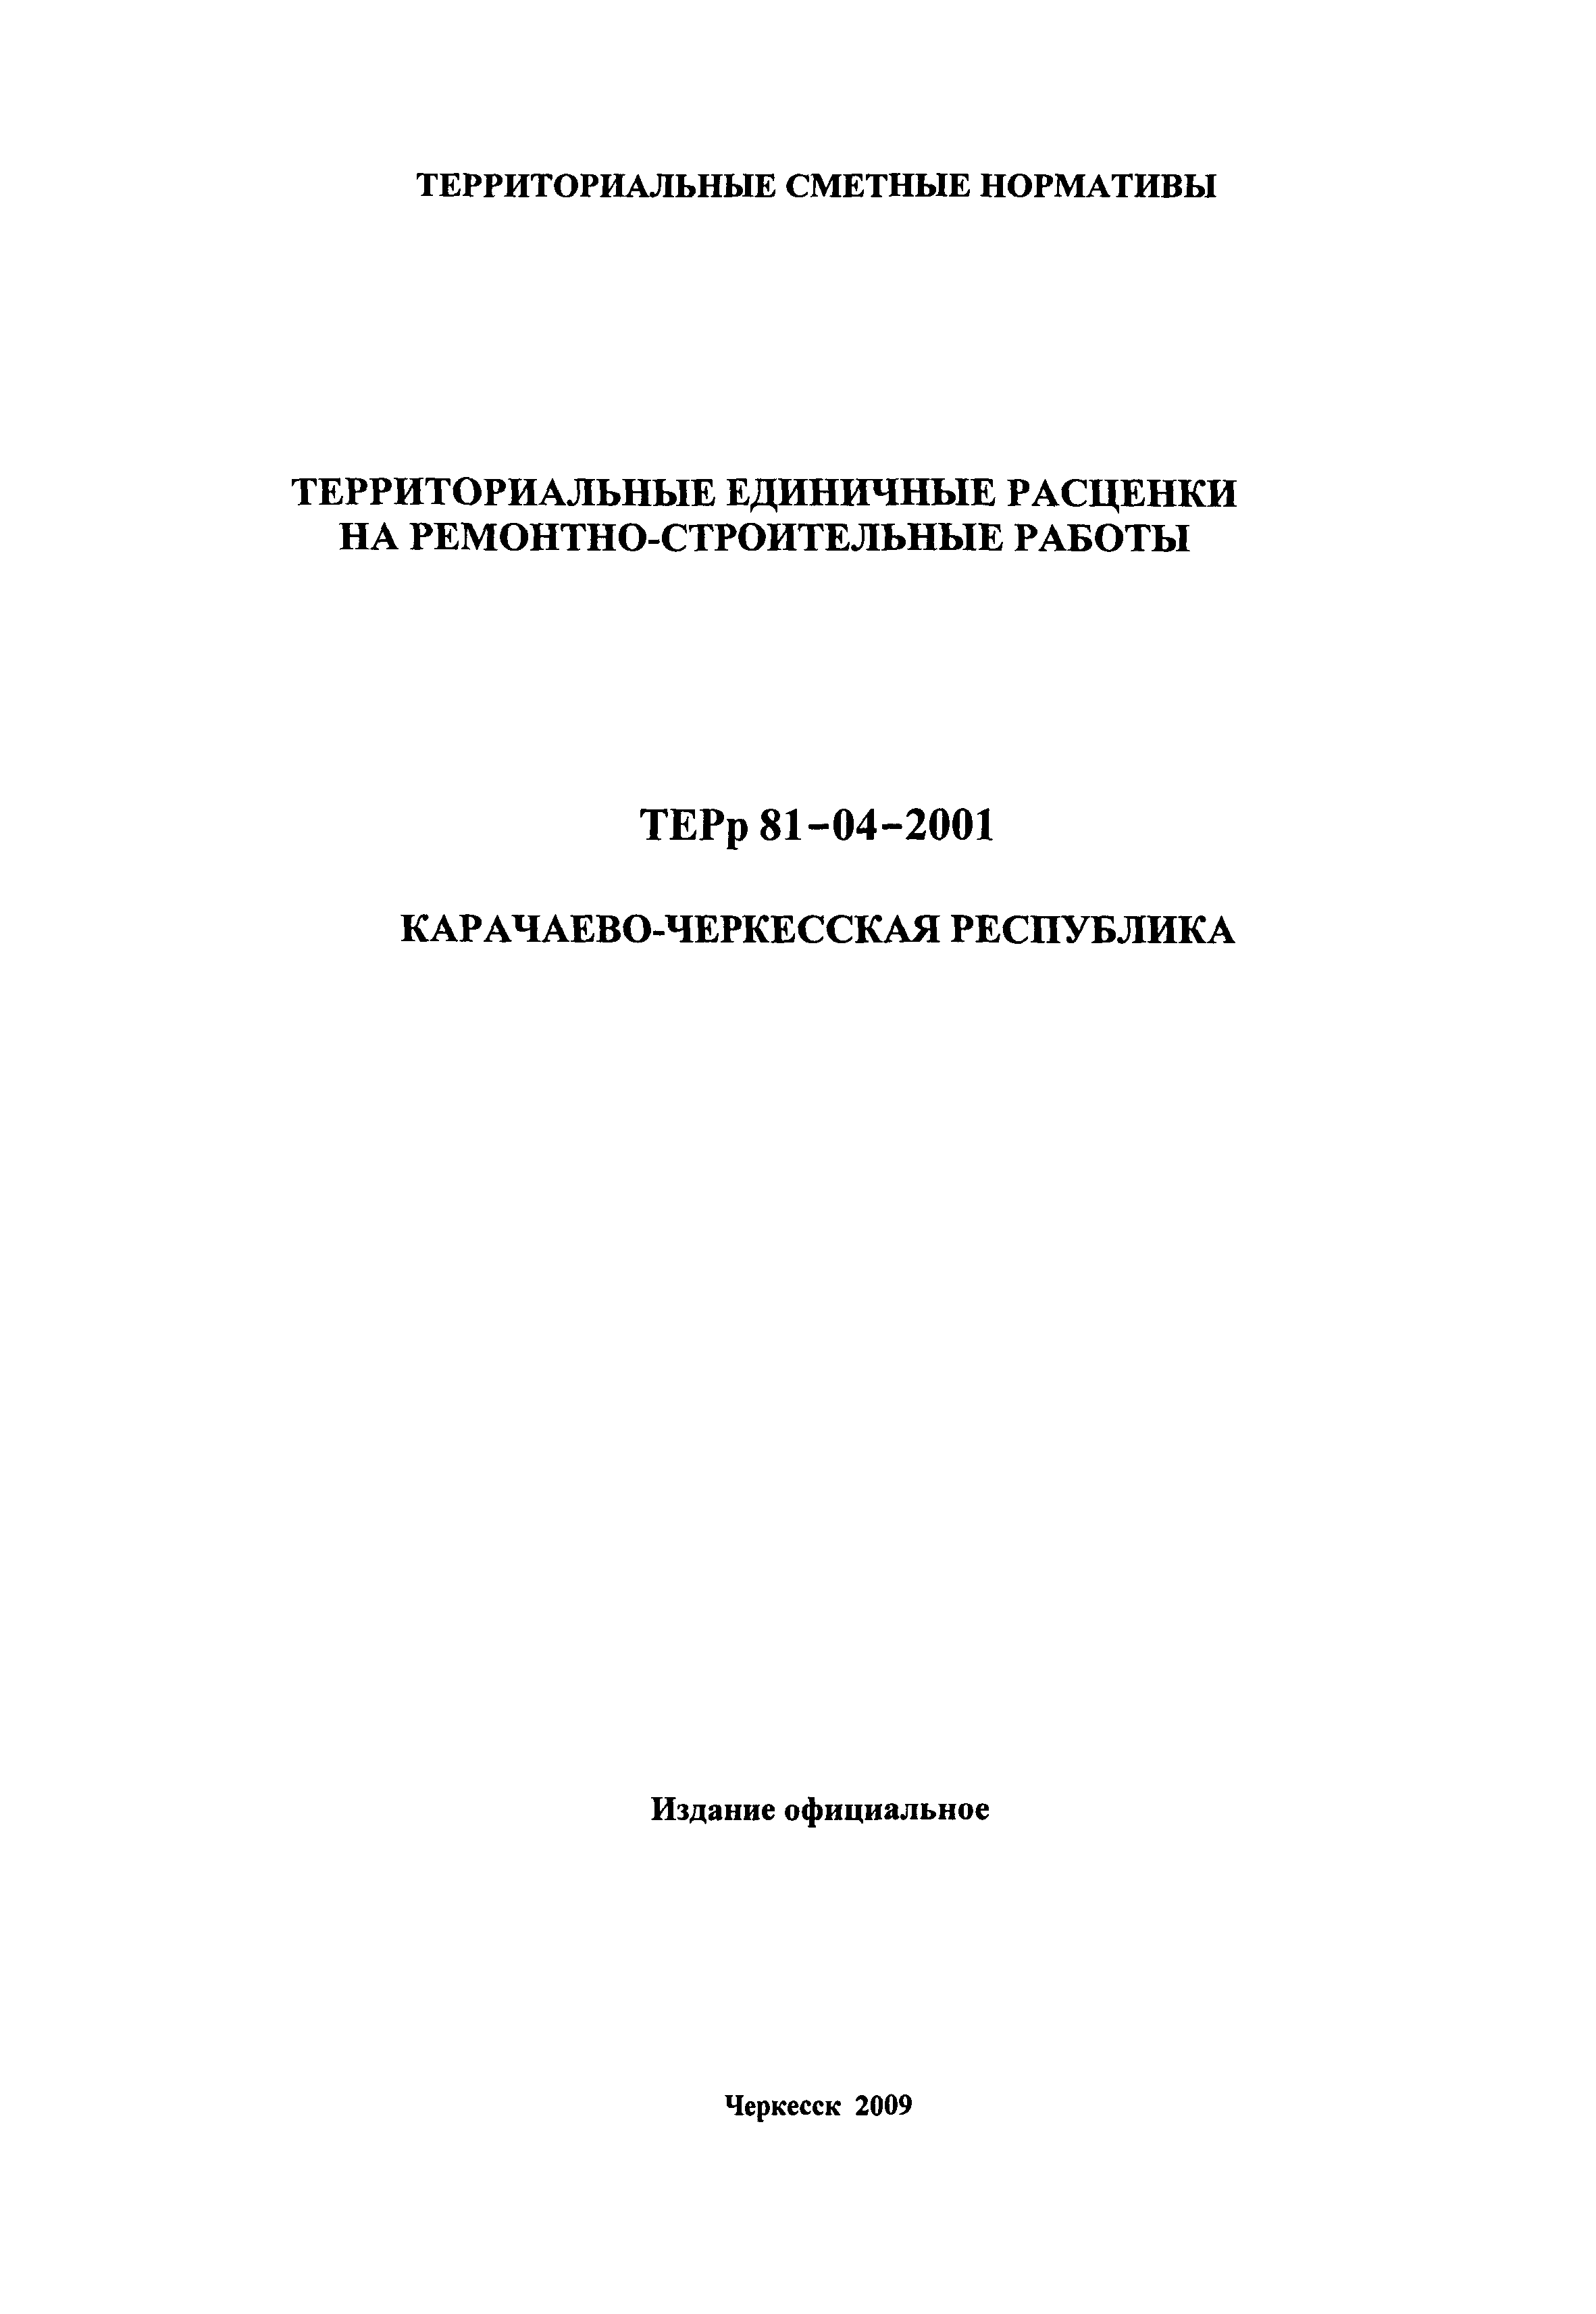 ТЕРр Карачаево-Черкесская Республика 2001-69